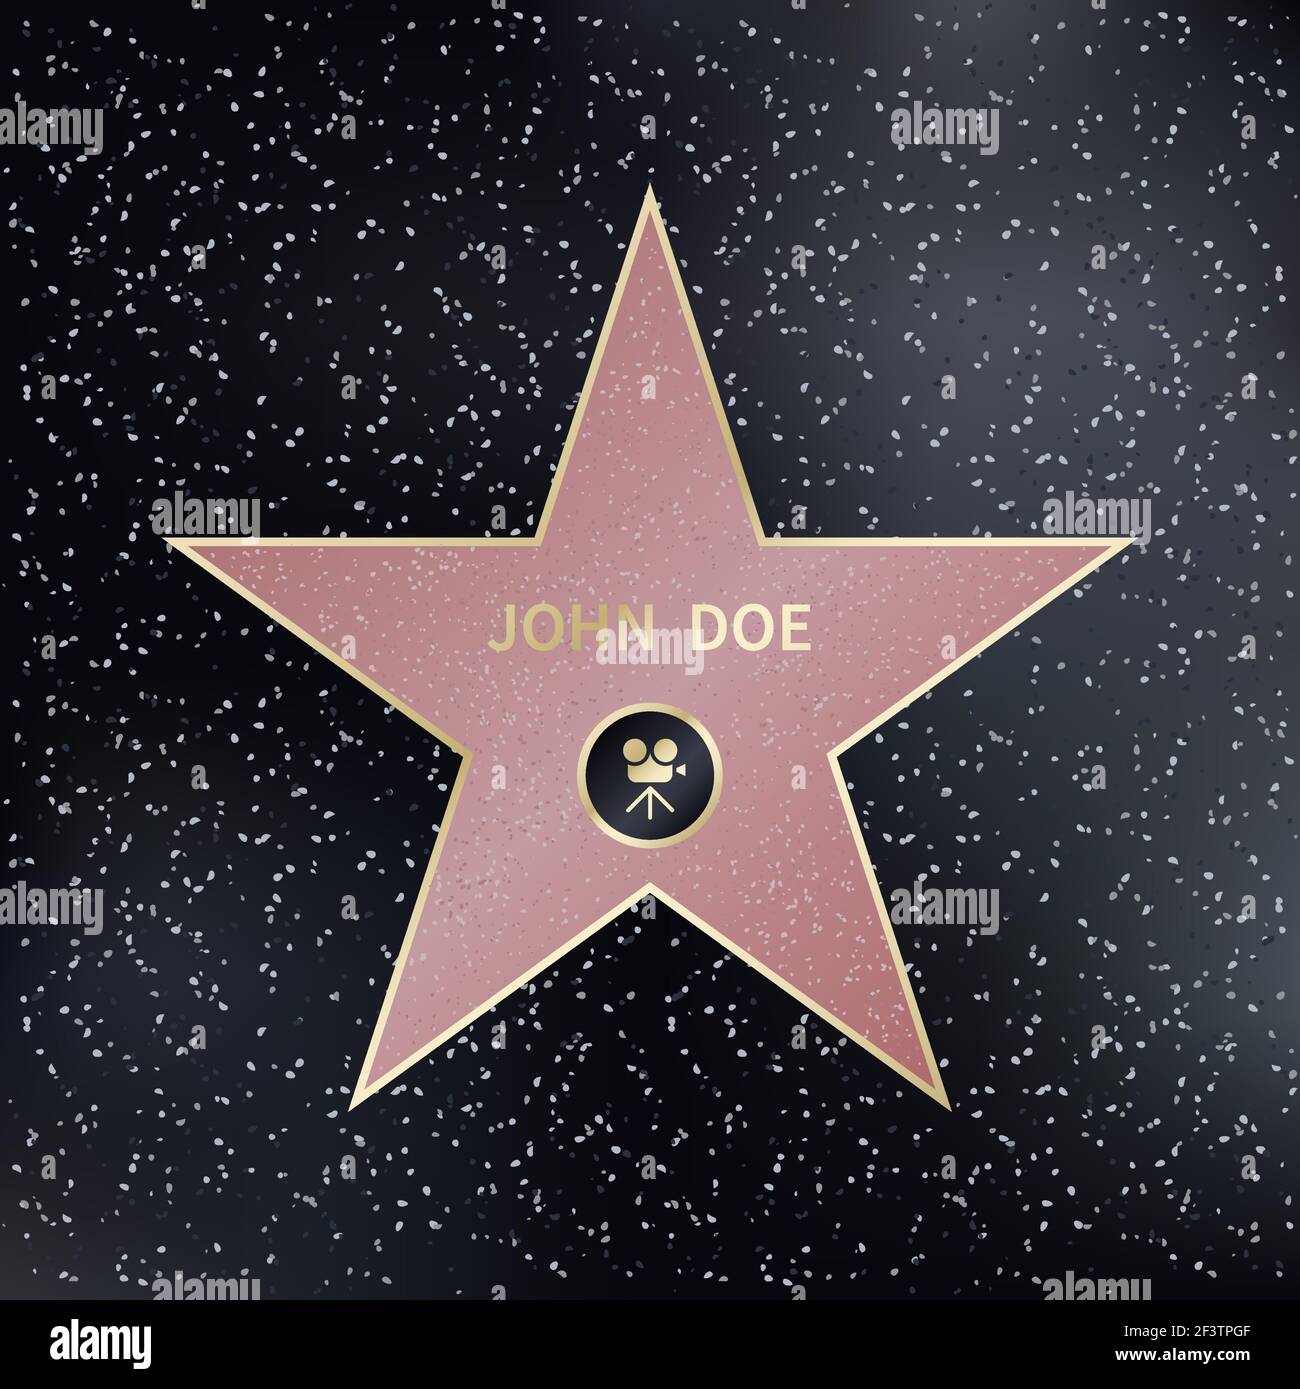 Hollywood Walk of Fame star. Star Fame, star hollywoodienne, célèbre producteur de star, star d'acteur. Illustration vectorielle Illustration de Vecteur